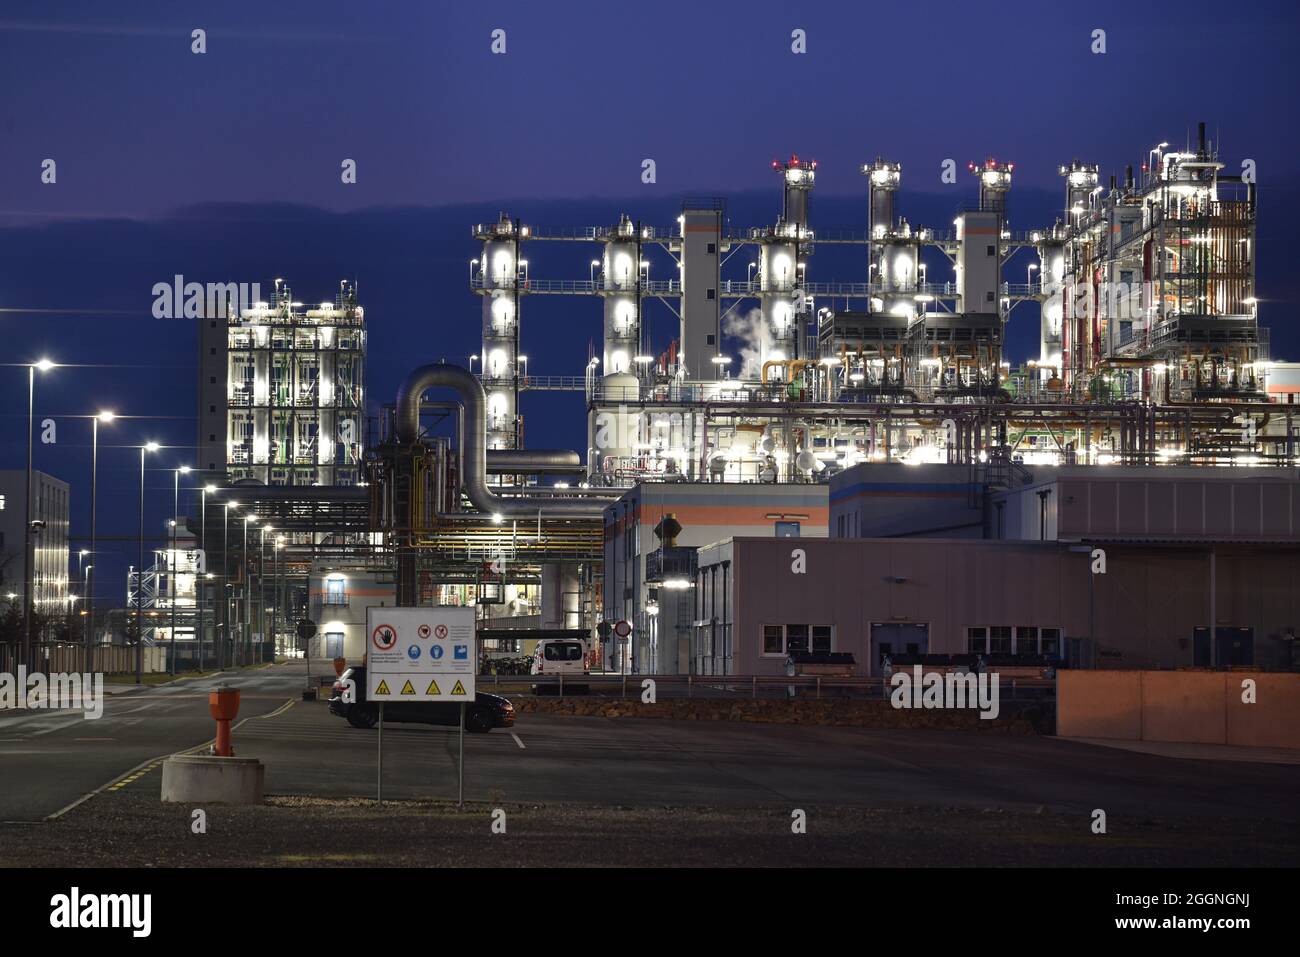 fabbrica chimica di notte con edifici, tubazioni e illuminazione - impianto industriale Foto Stock